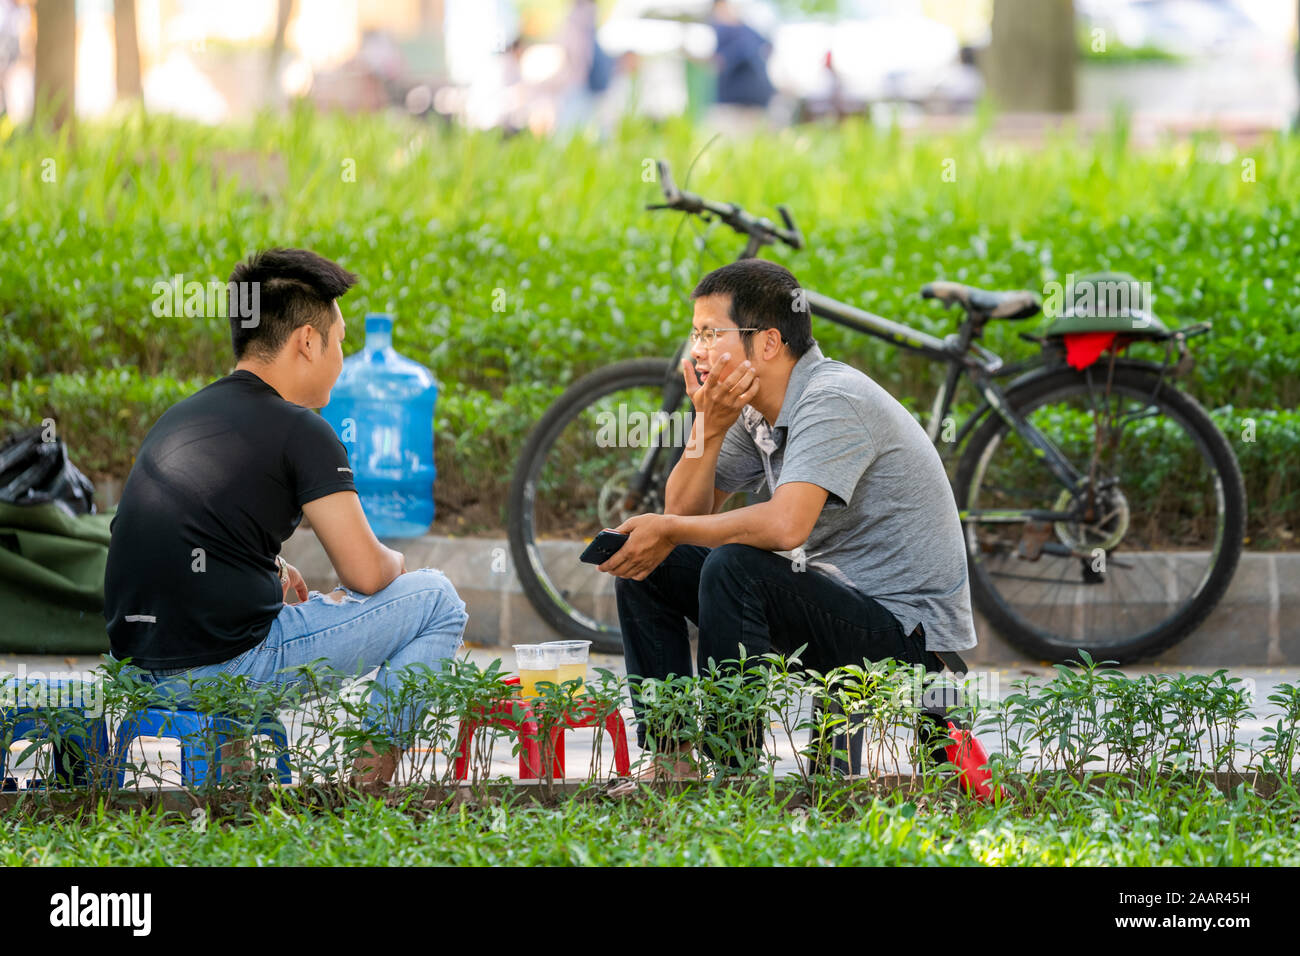 Hanoi, Vietnam - 12 octobre 2019 : Deux jeunes hommes asiatiques s'asseoir dans un parc sur des tabourets en plastique boire du jus et de parler de leur journée Banque D'Images